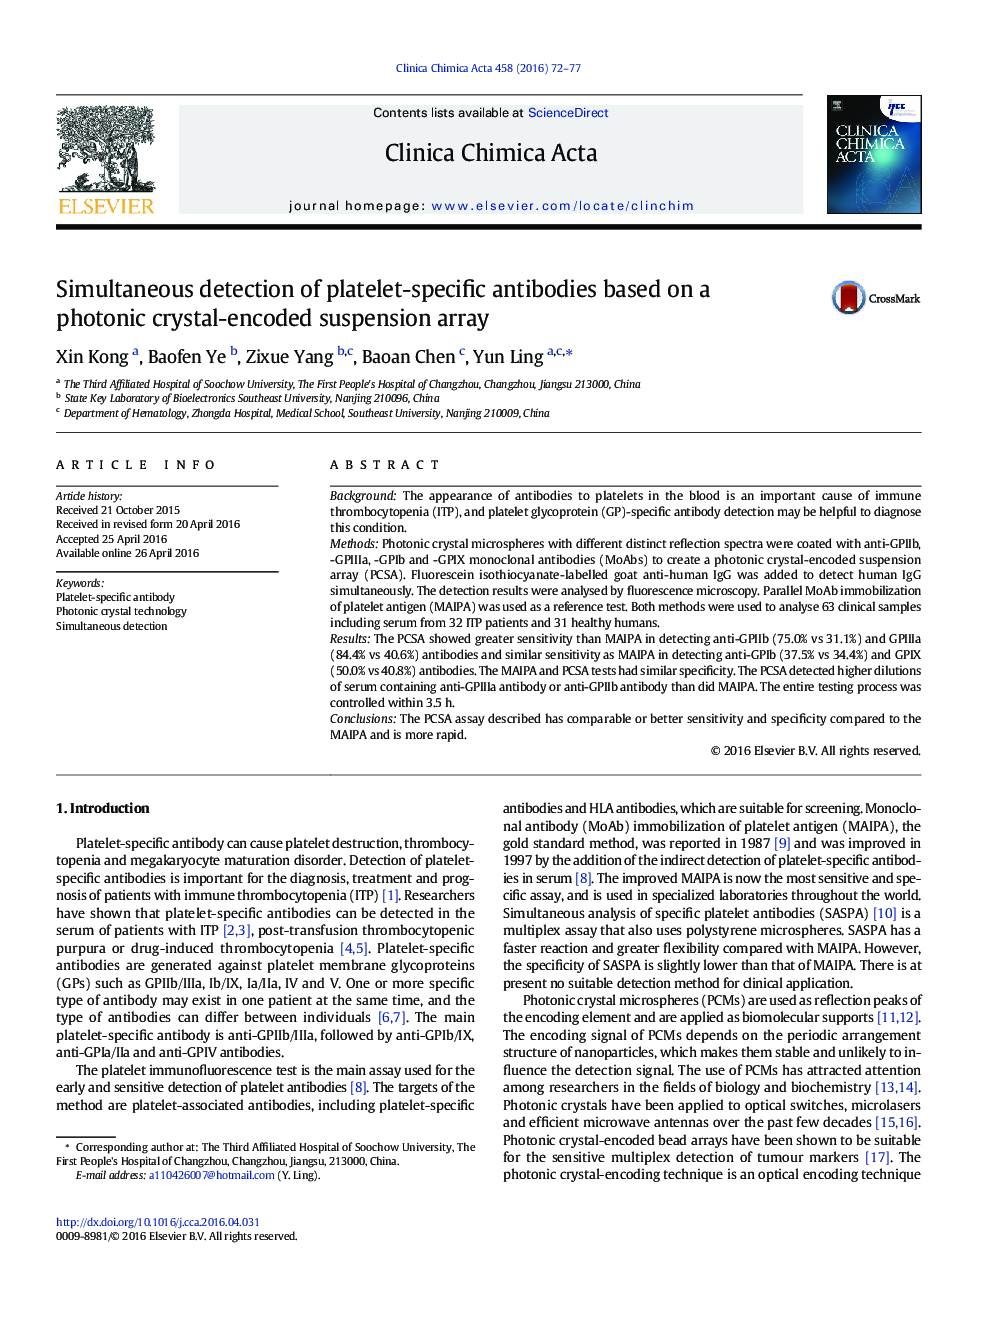 تشخیص همزمان آنتی بادی های اختصاصی پلاکتی براساس آرایه تعلیق کد گذاری شده کریستال فوتونی 